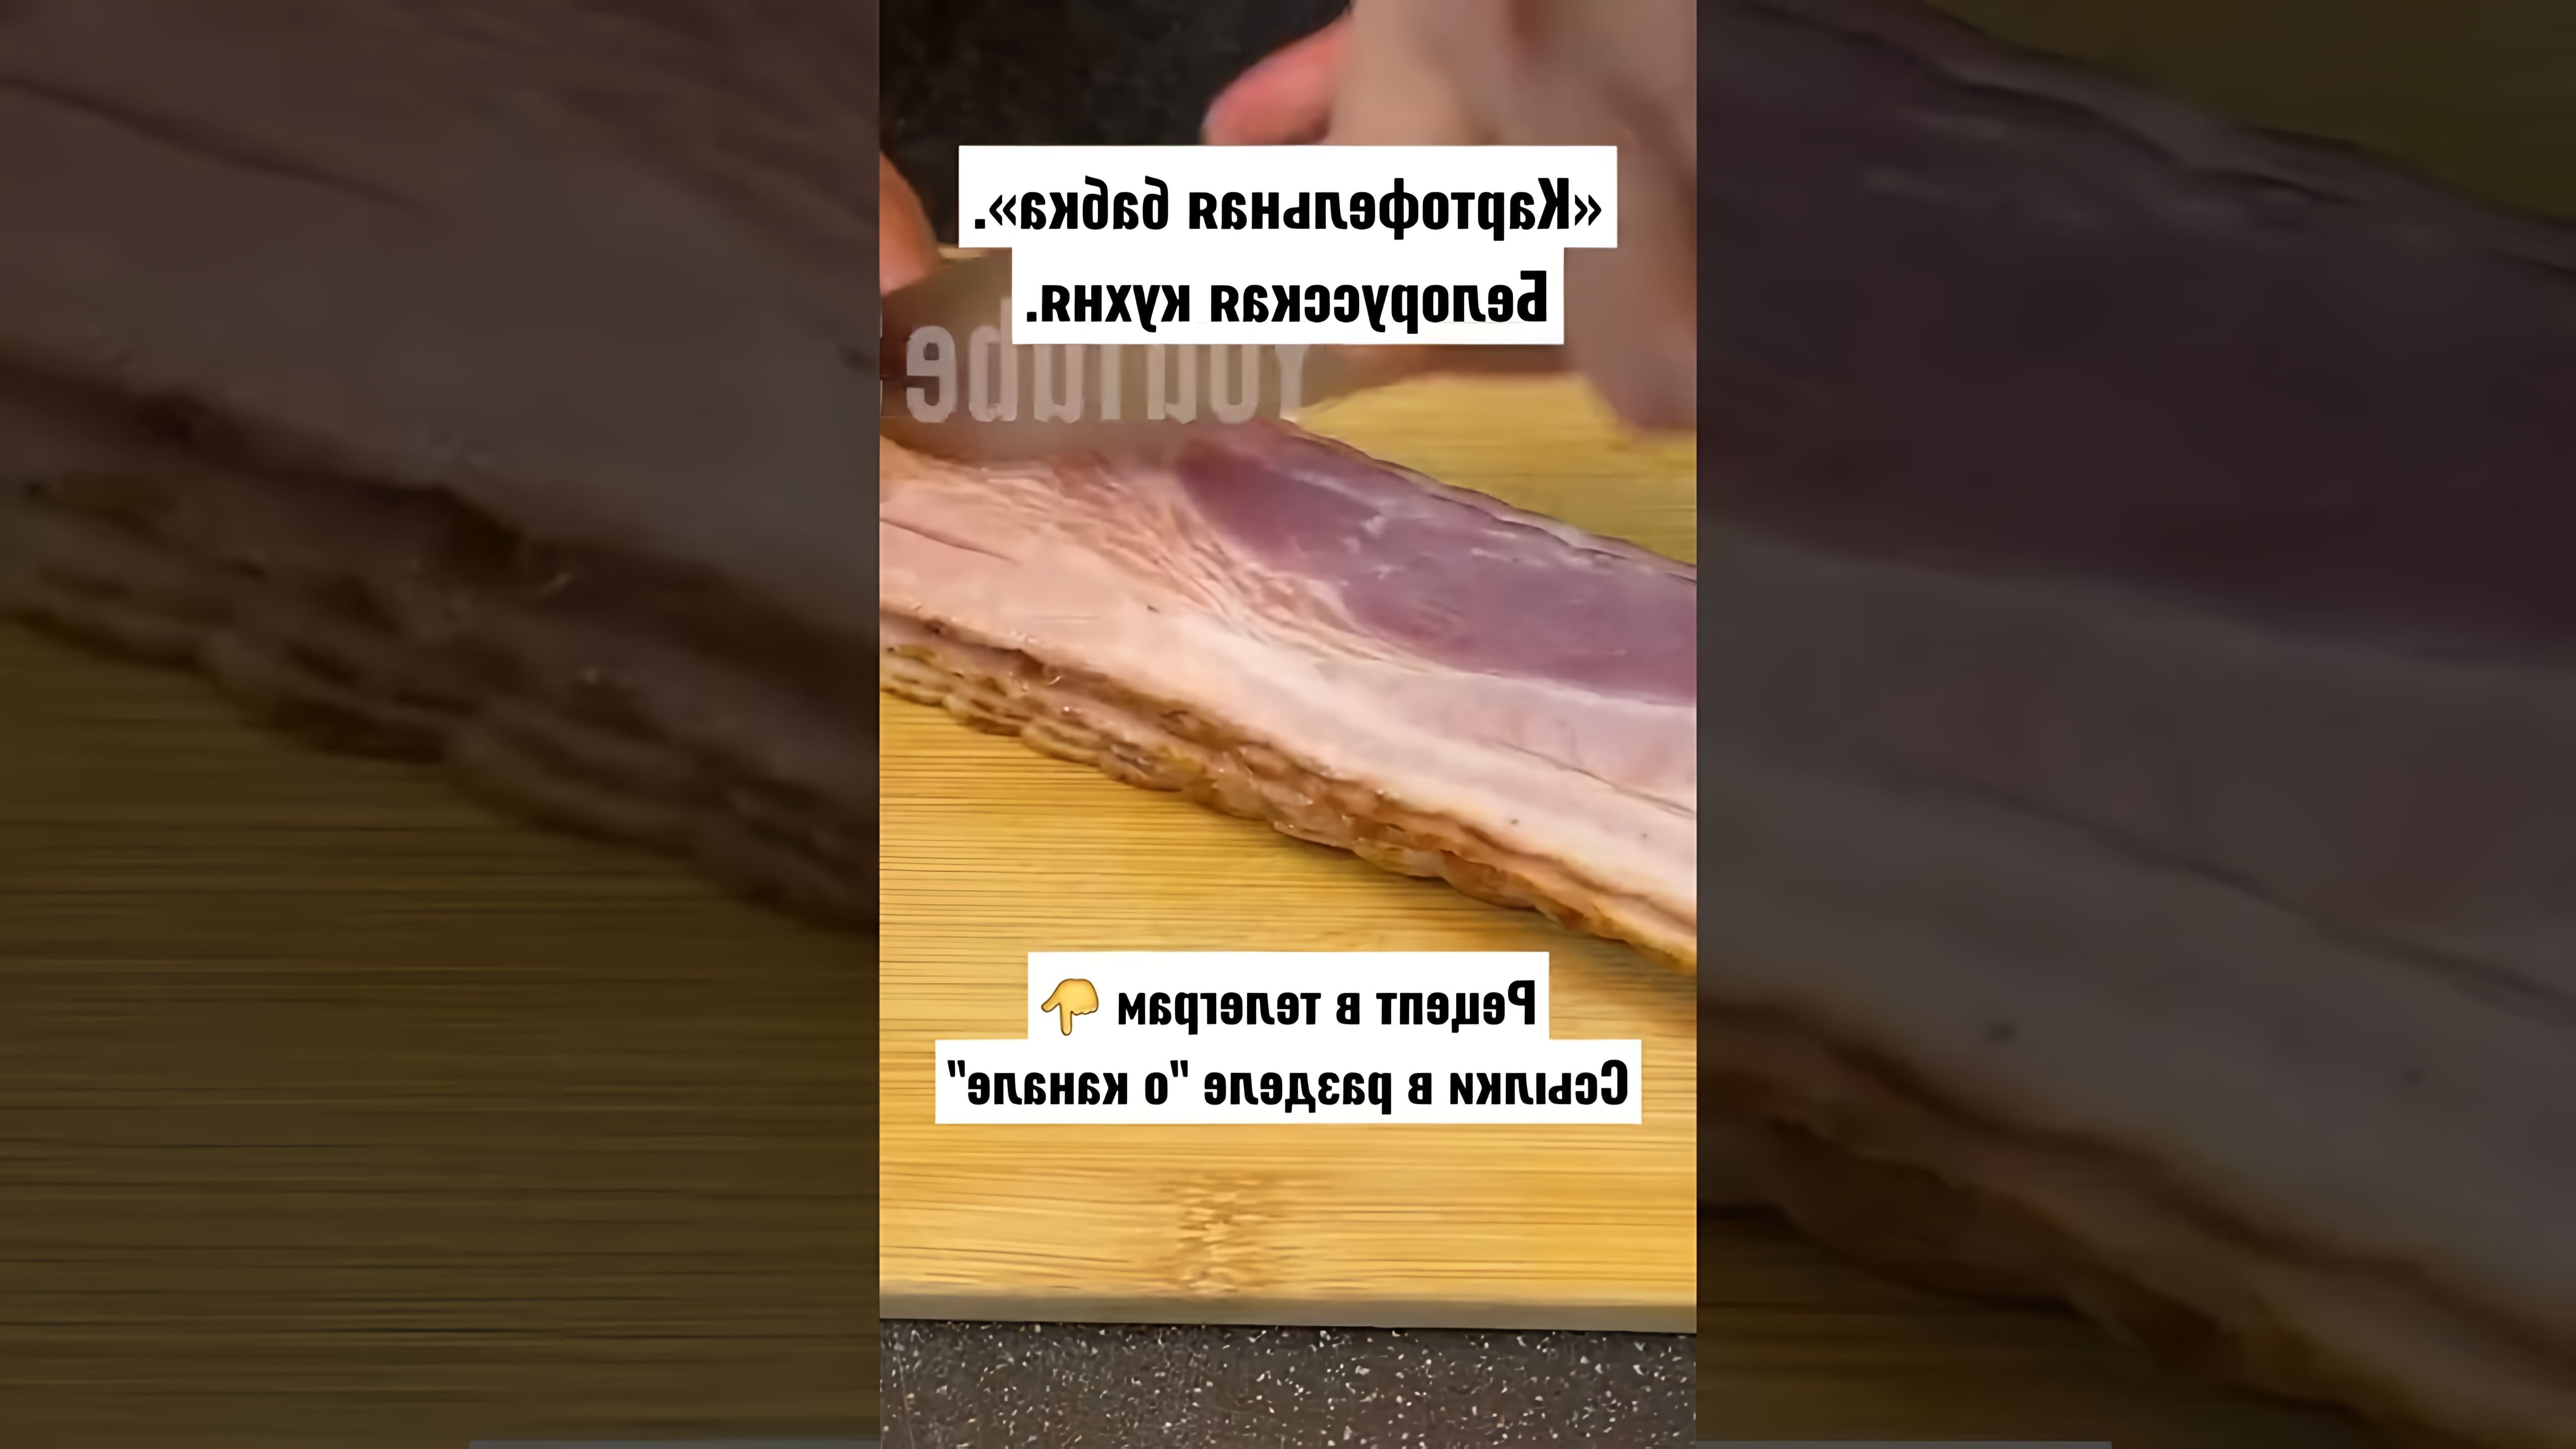 В этом видео-ролике вы увидите рецепт приготовления картофельной бабки, традиционного блюда белорусской кухни